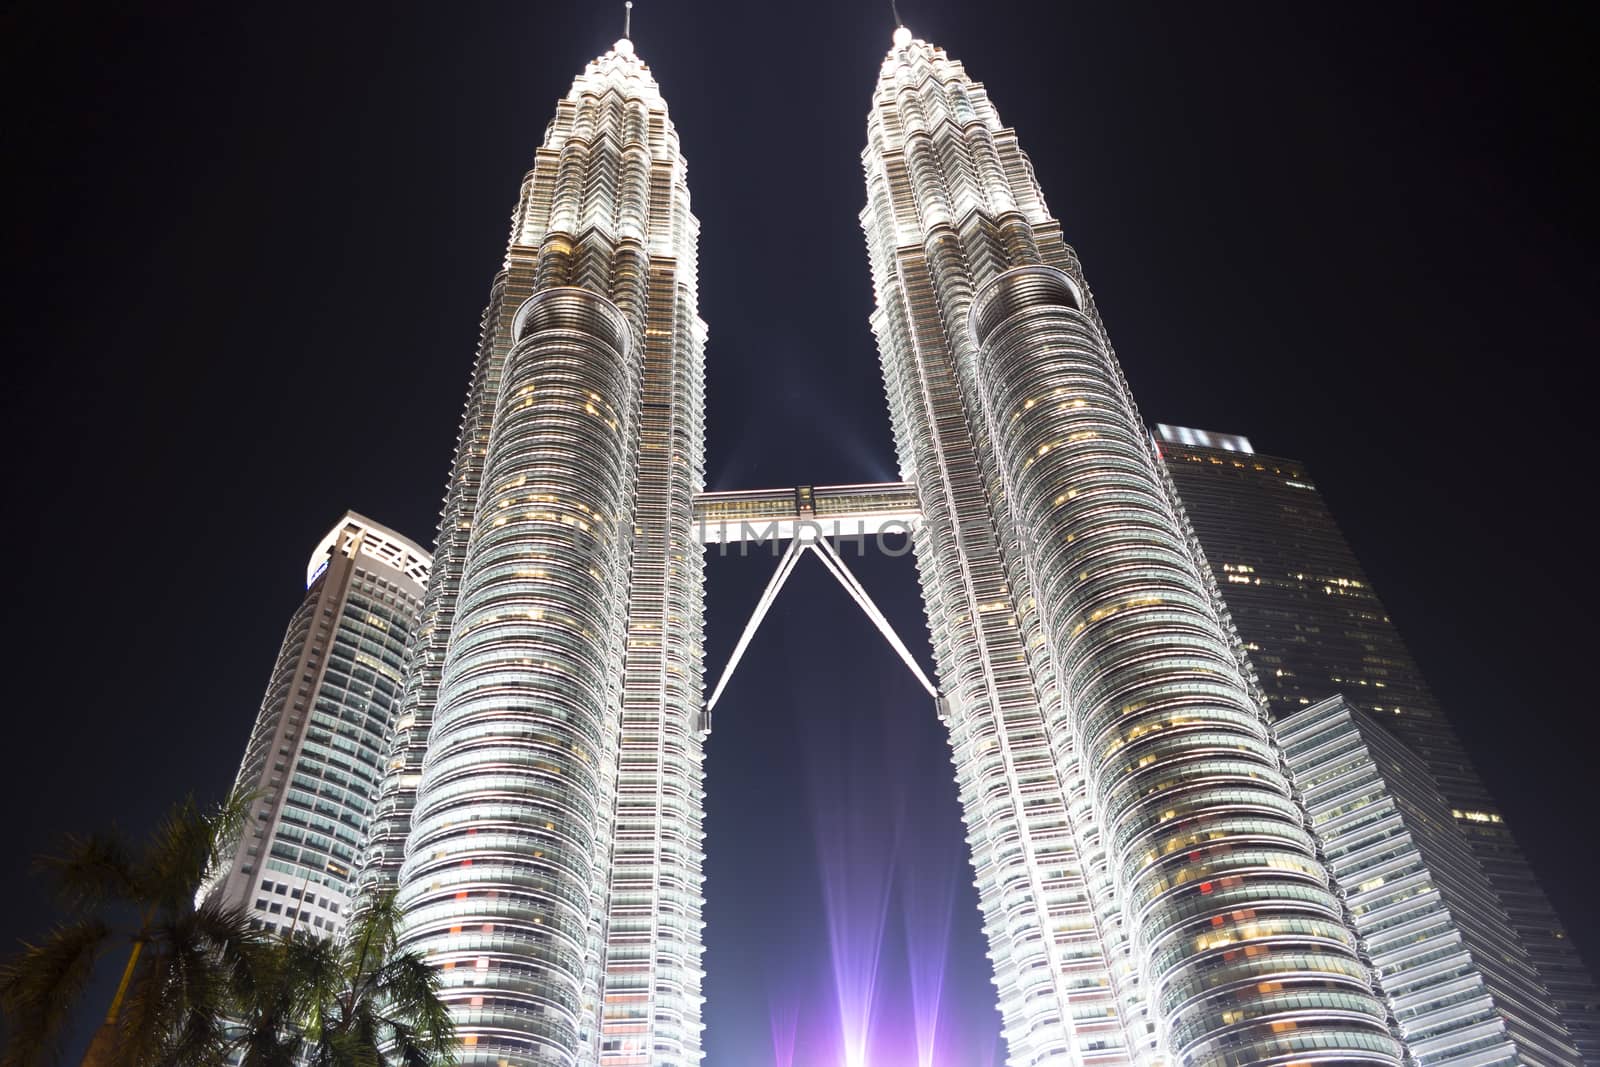 Petronas Twin Towers in Kuala Lumpur. by GNNick